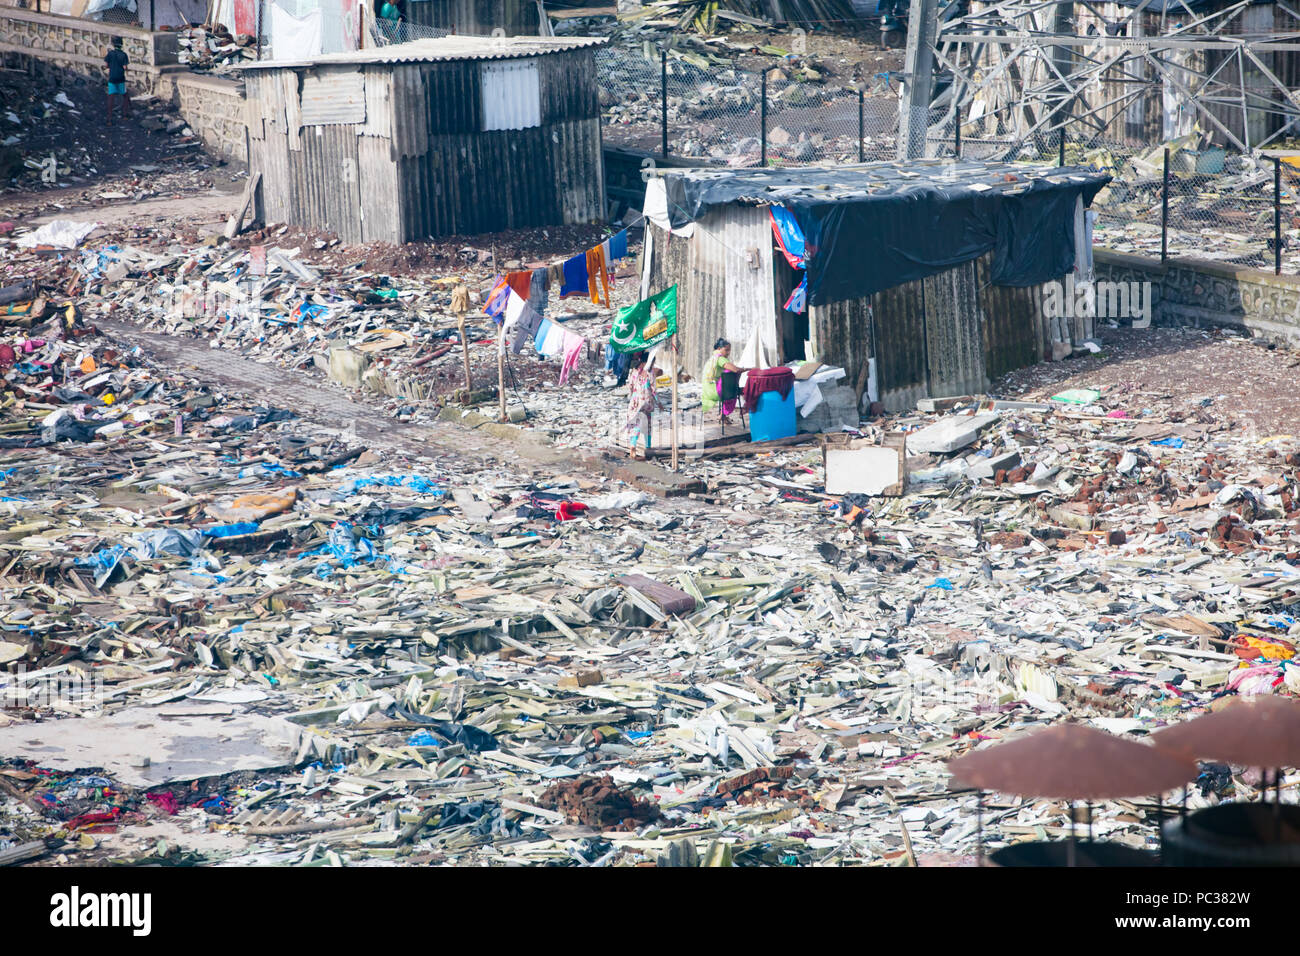 Mumbai Slum Development Stock Photo